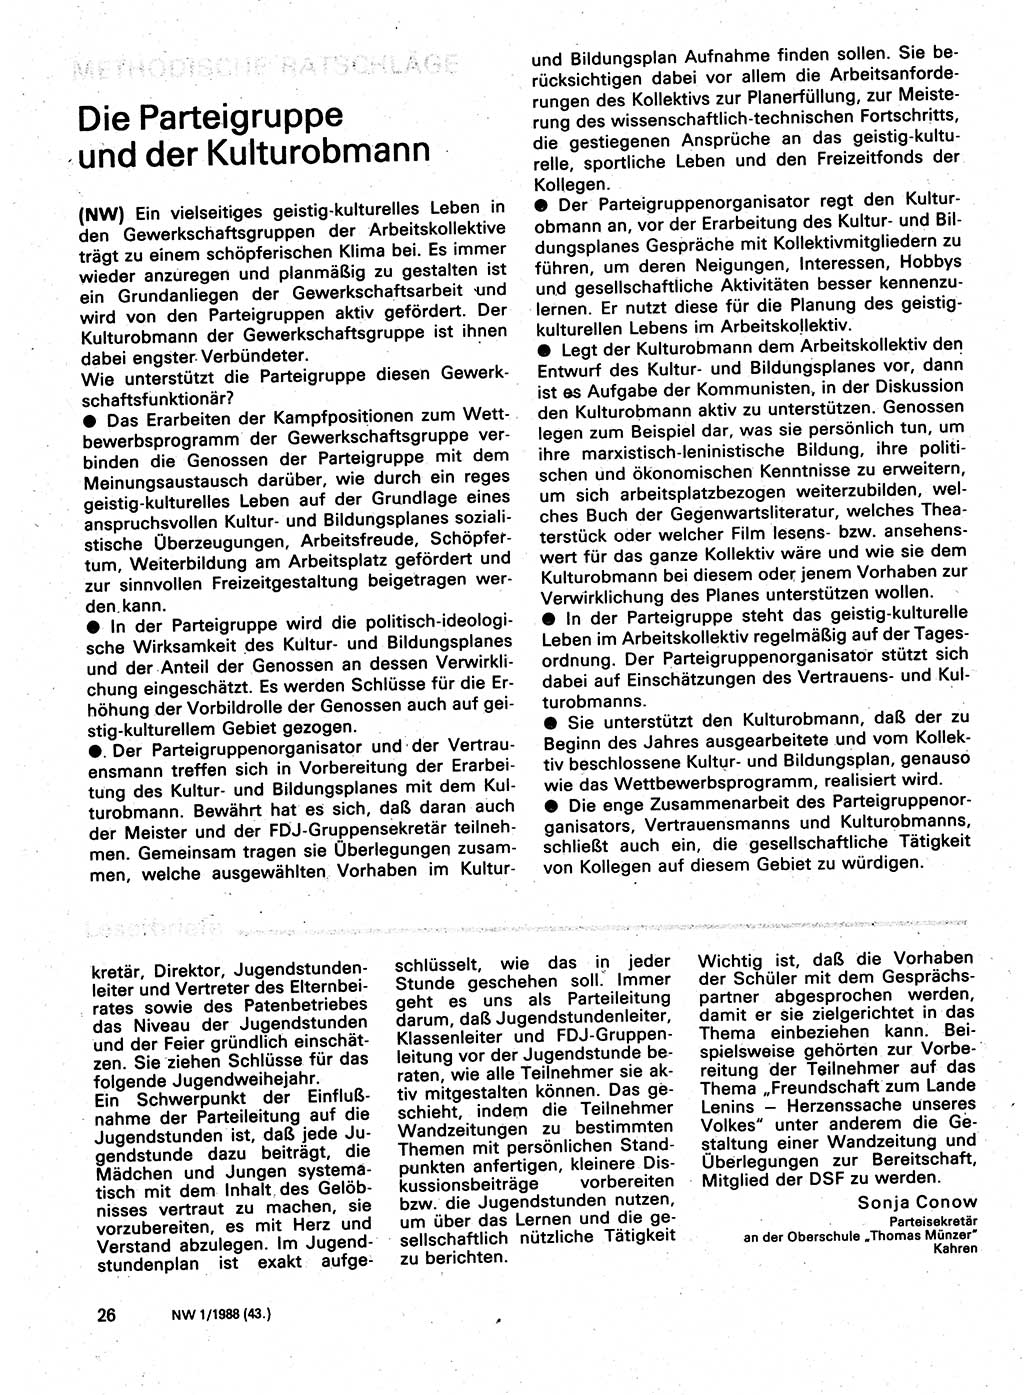 Neuer Weg (NW), Organ des Zentralkomitees (ZK) der SED (Sozialistische Einheitspartei Deutschlands) für Fragen des Parteilebens, 43. Jahrgang [Deutsche Demokratische Republik (DDR)] 1988, Seite 26 (NW ZK SED DDR 1988, S. 26)